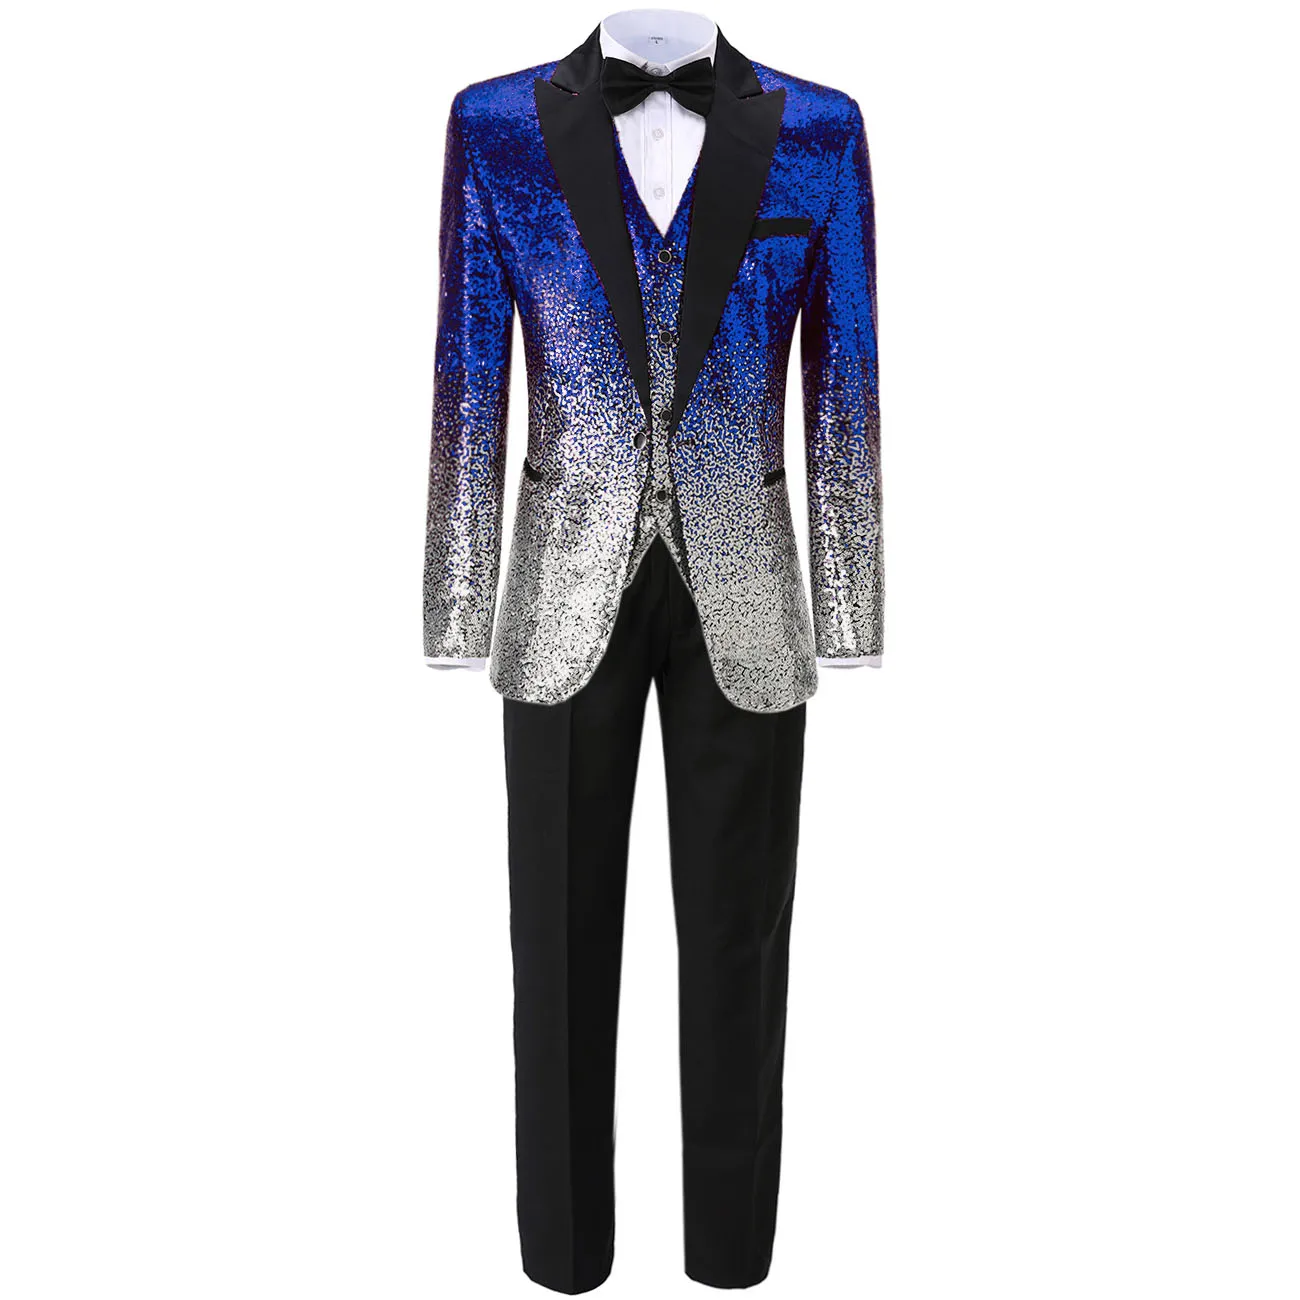 

3 Pieces Mens Sequin Suit Shiny Slim Fit Tuxedo Peak Notch Lapel for Party Wedding Groom Banquet Nightclub (Blazer+Vest+Pant)